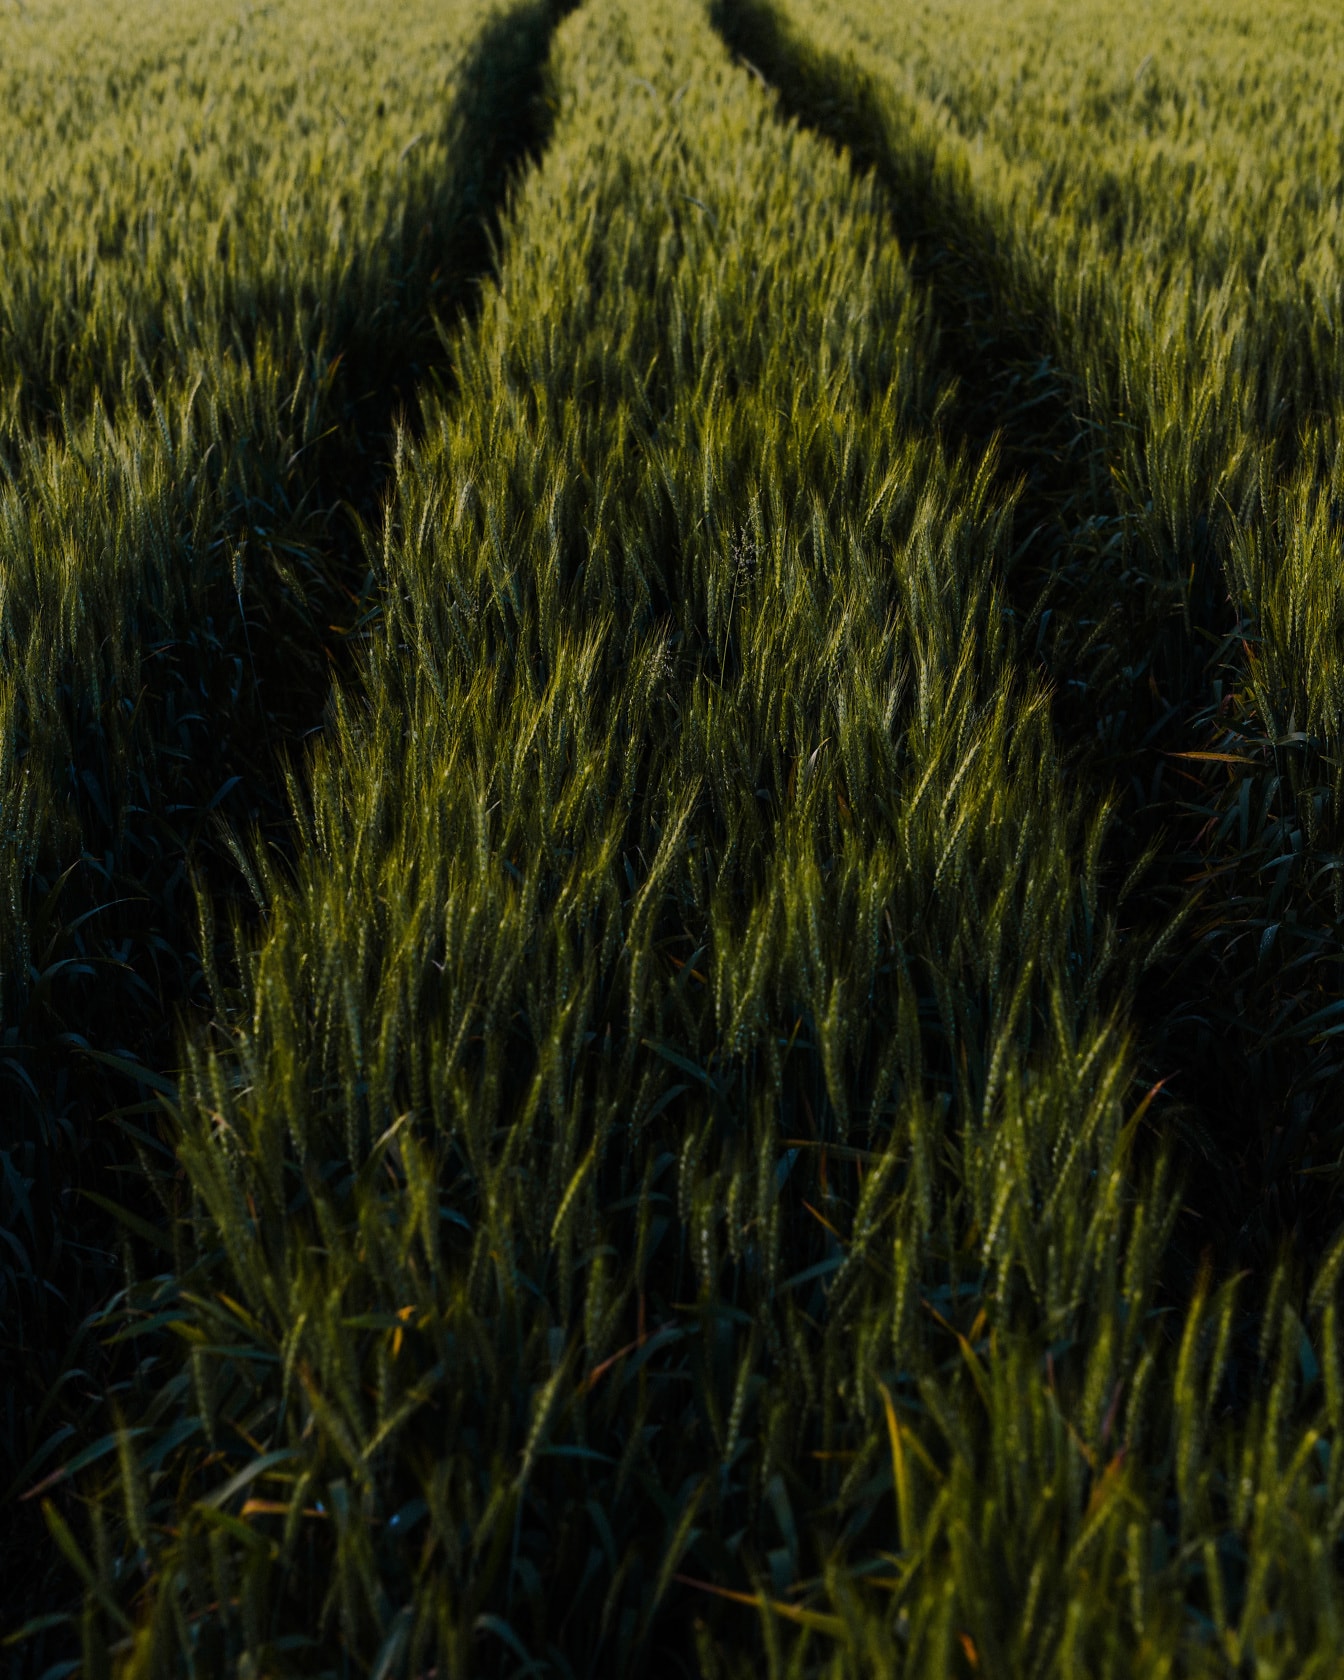 Staze u poljoprivrednom ravnom polju zelene pšenice